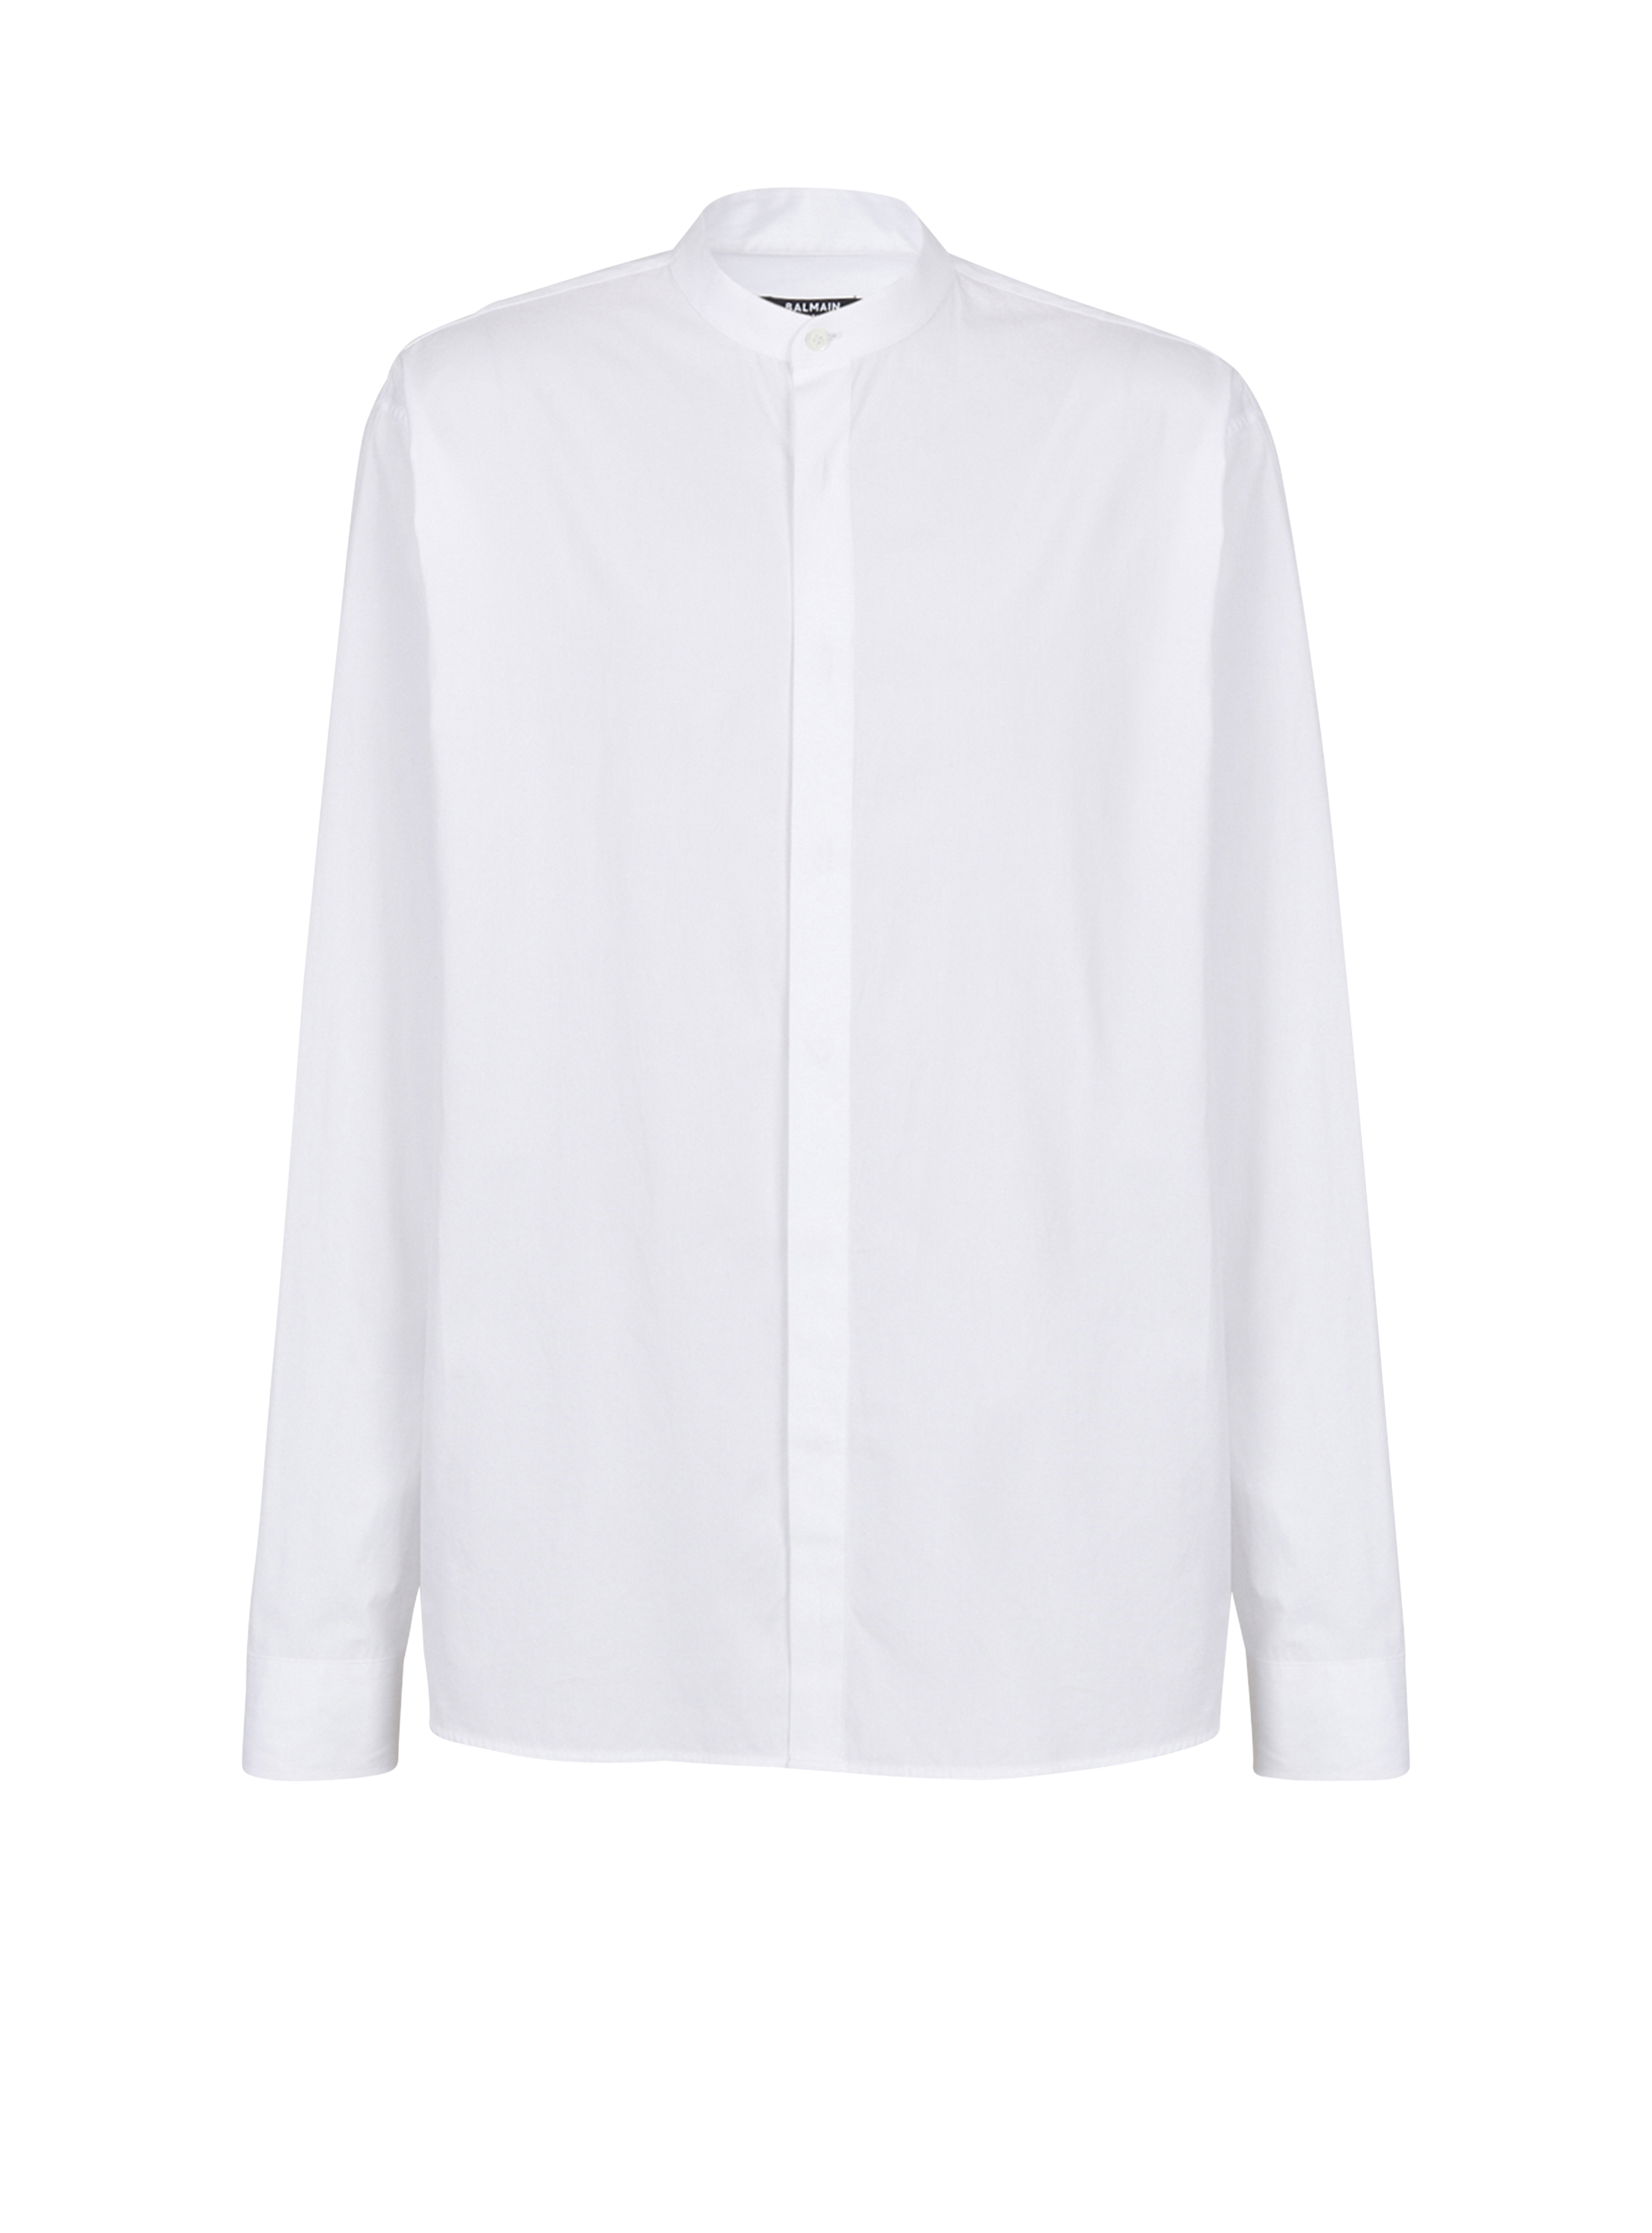 Camicia in cotone, bianco